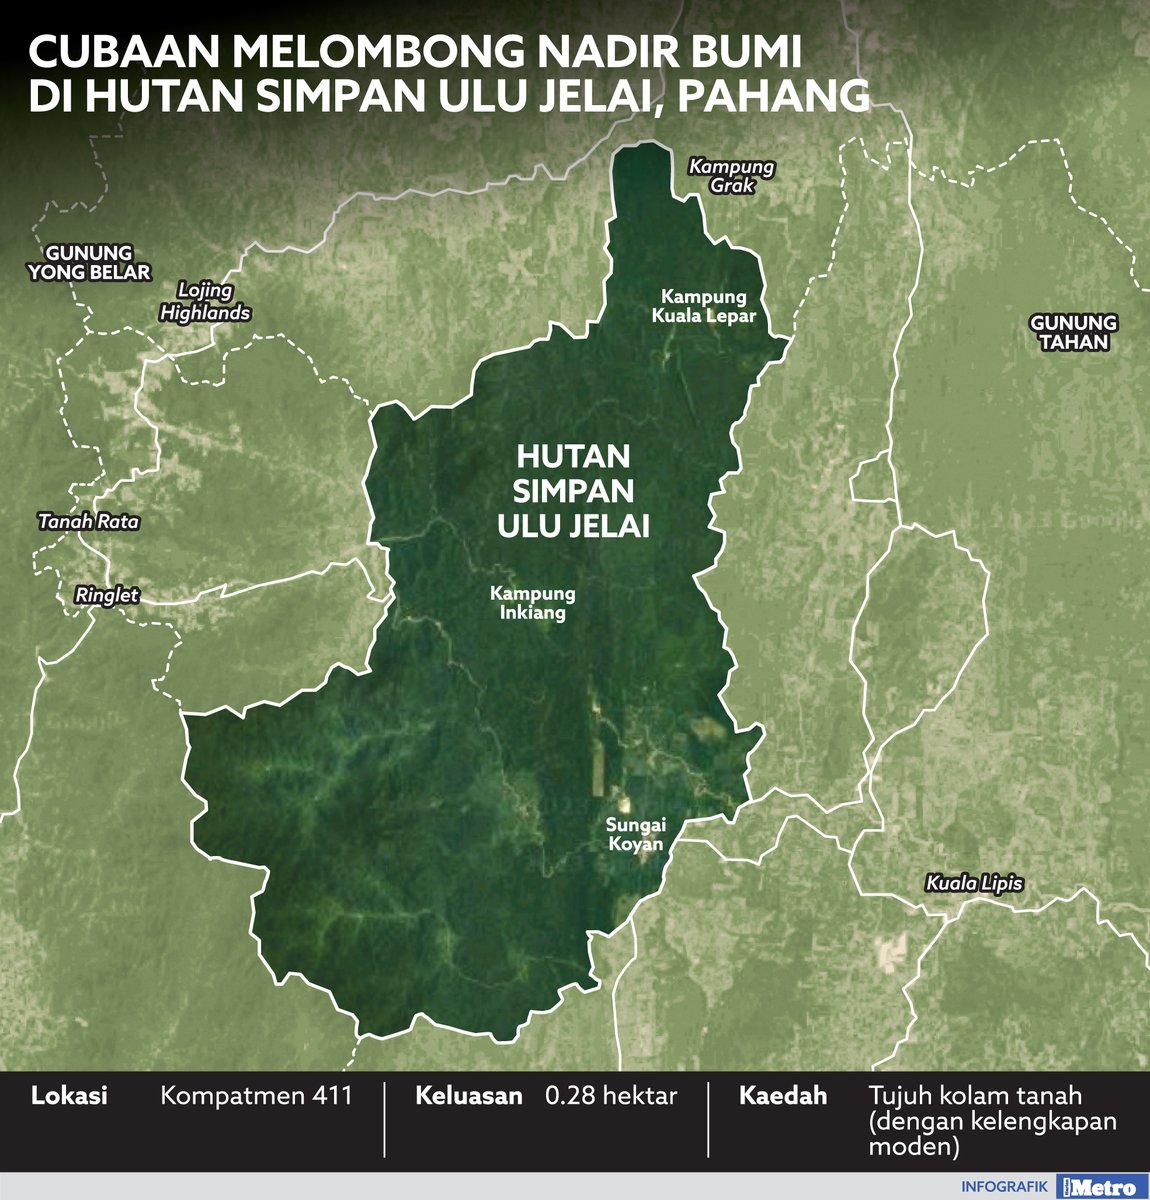 #infografik Cubaan melombong nadir bumi di Hutan Simpan Ulu Jelai, Pahang

hmetro.com.my/utama/2023/03/…